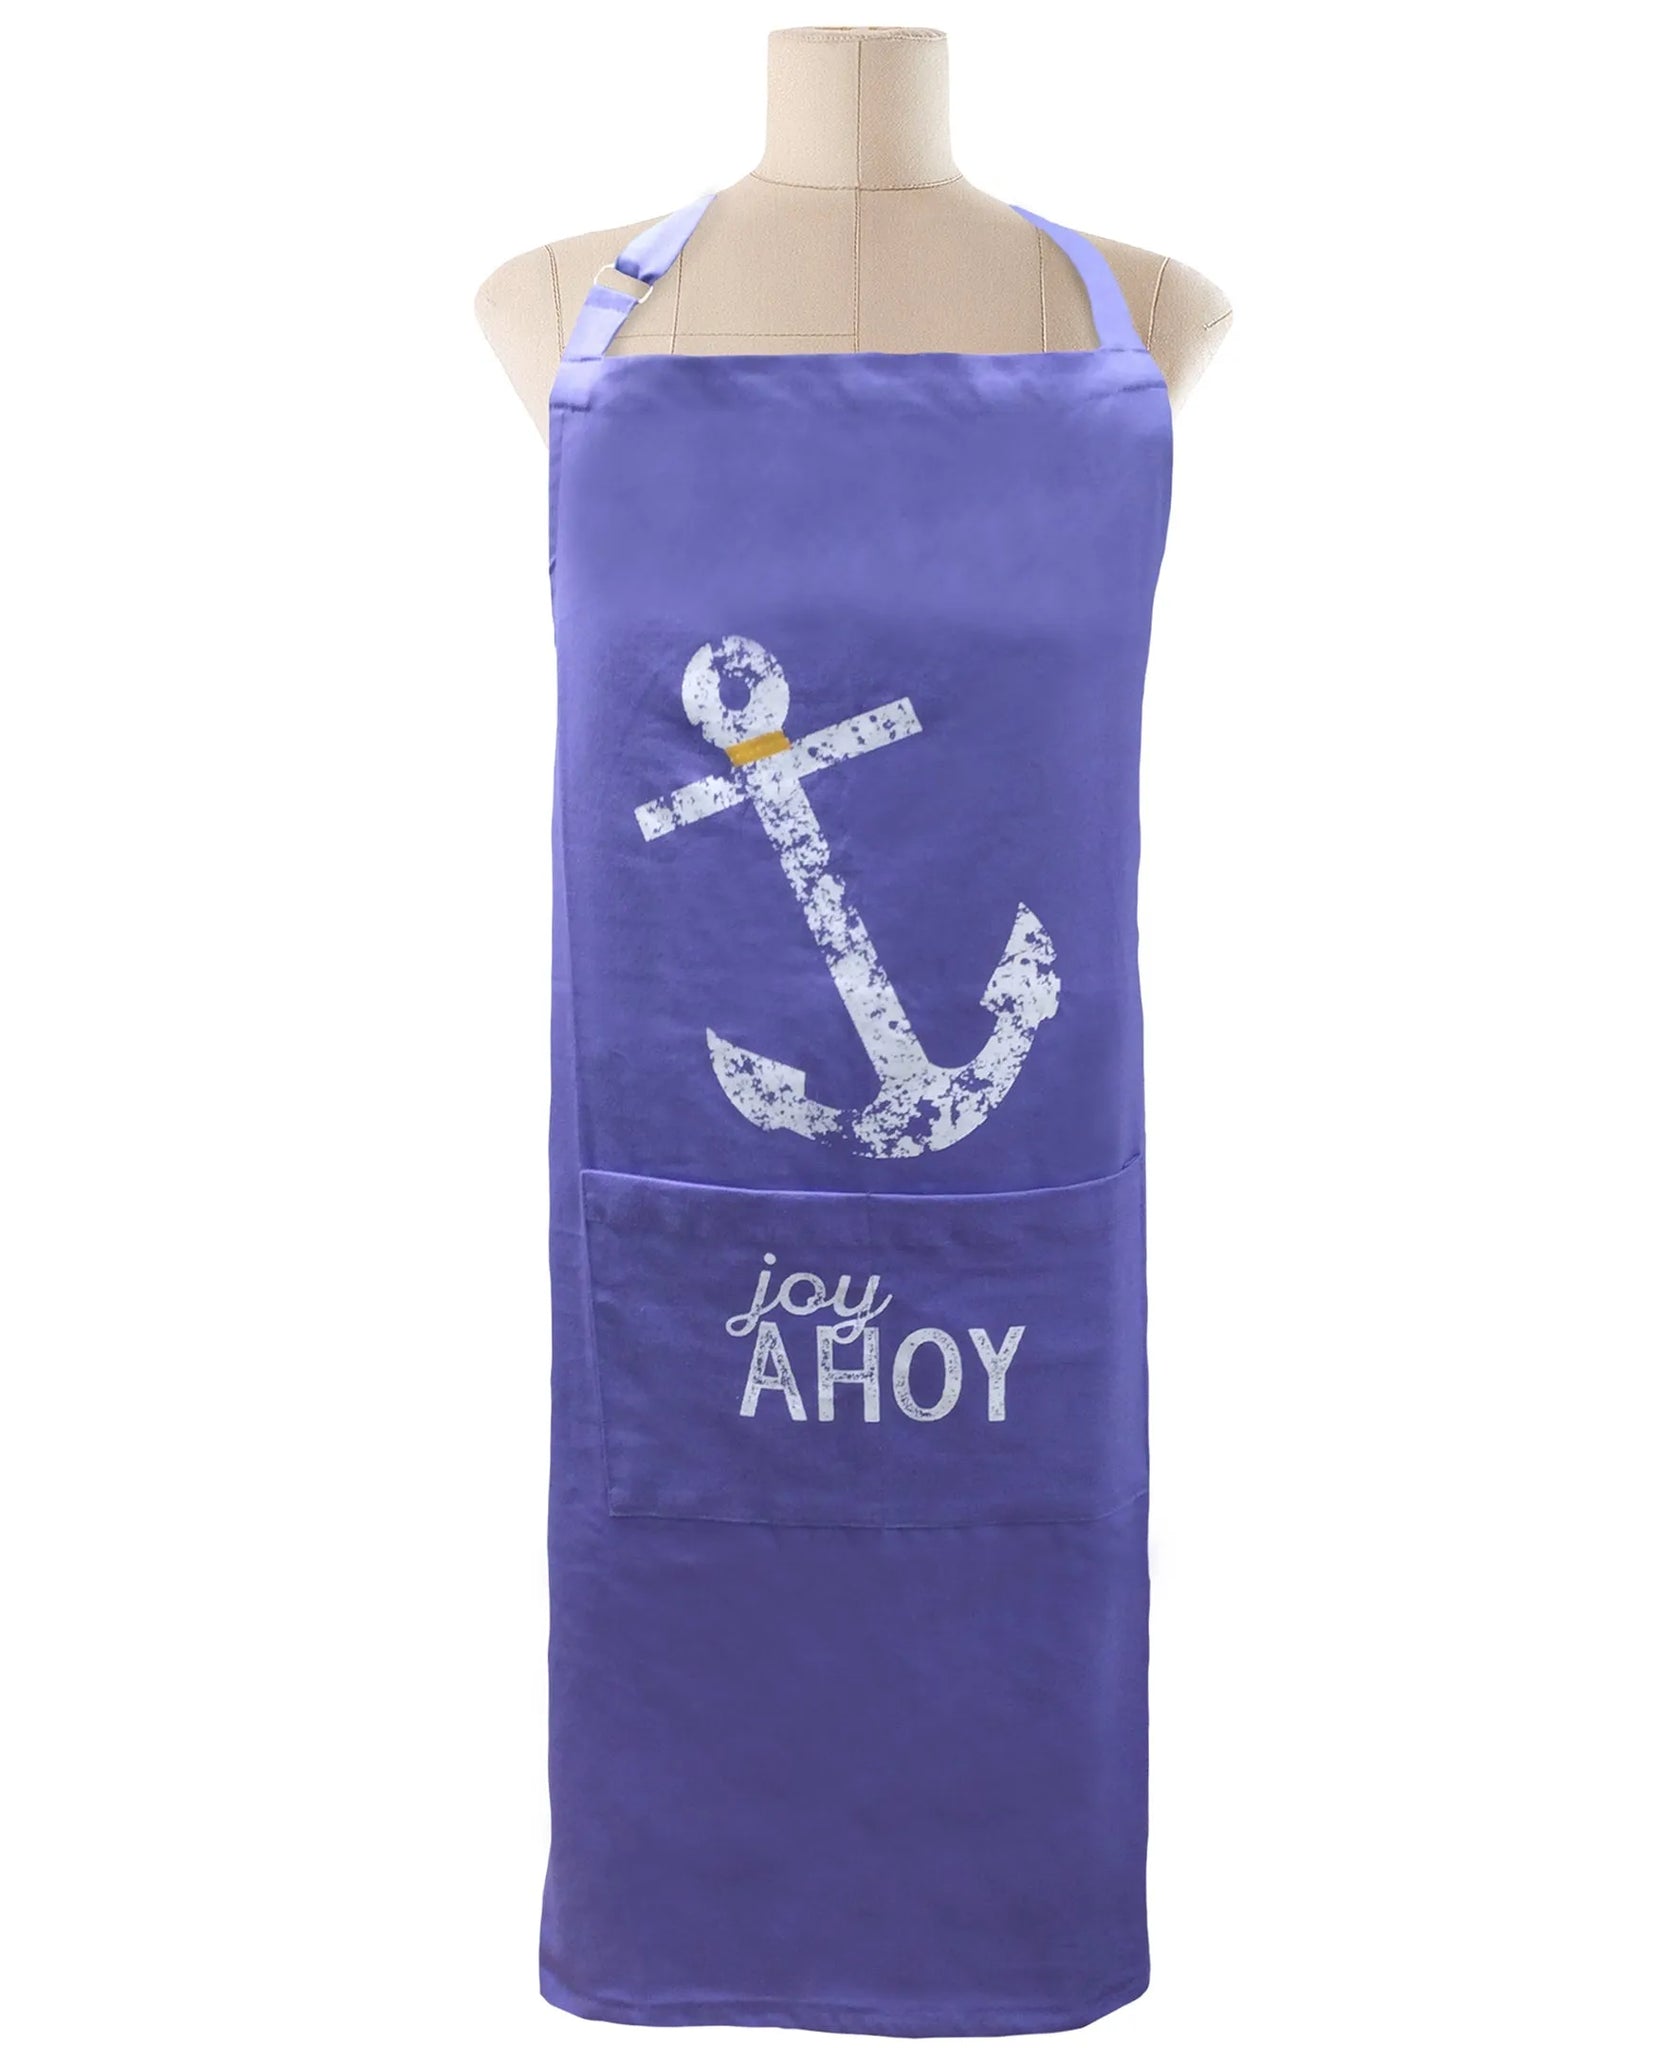 Free-size Zen Blue  Tie-back Adjustable Apron, Joy Ahoy Print